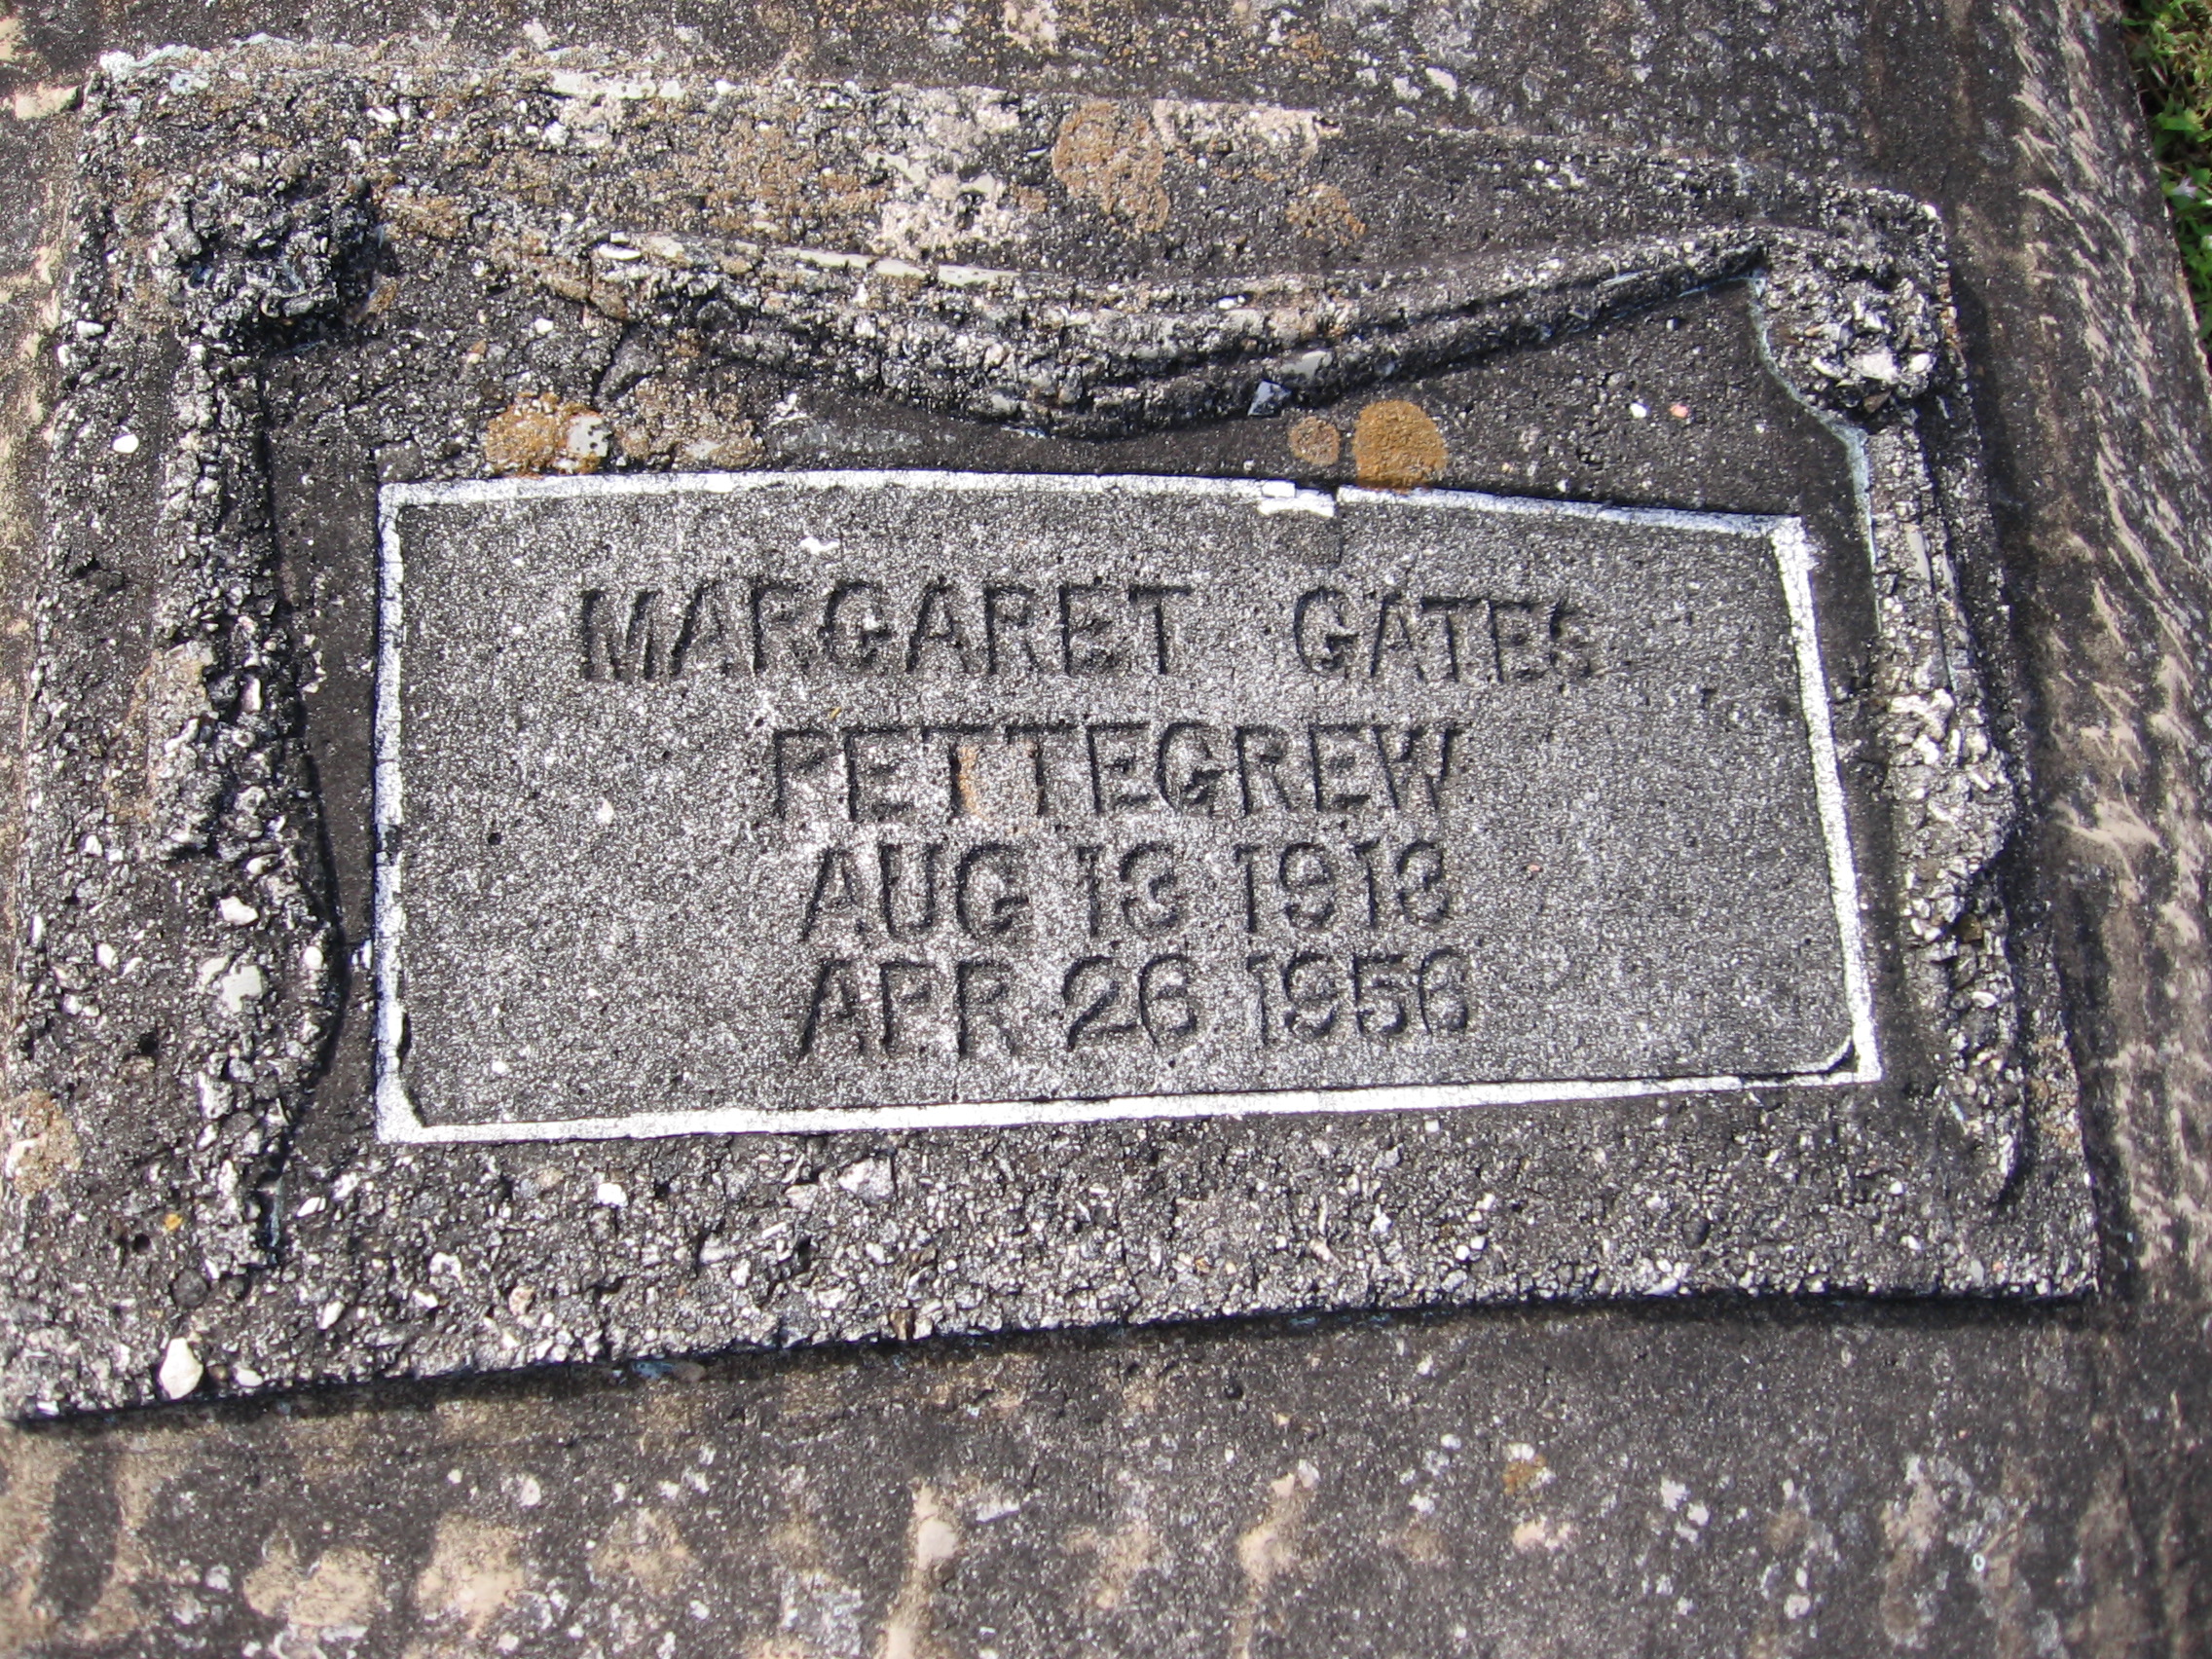 Margaret Gates Pettegrew